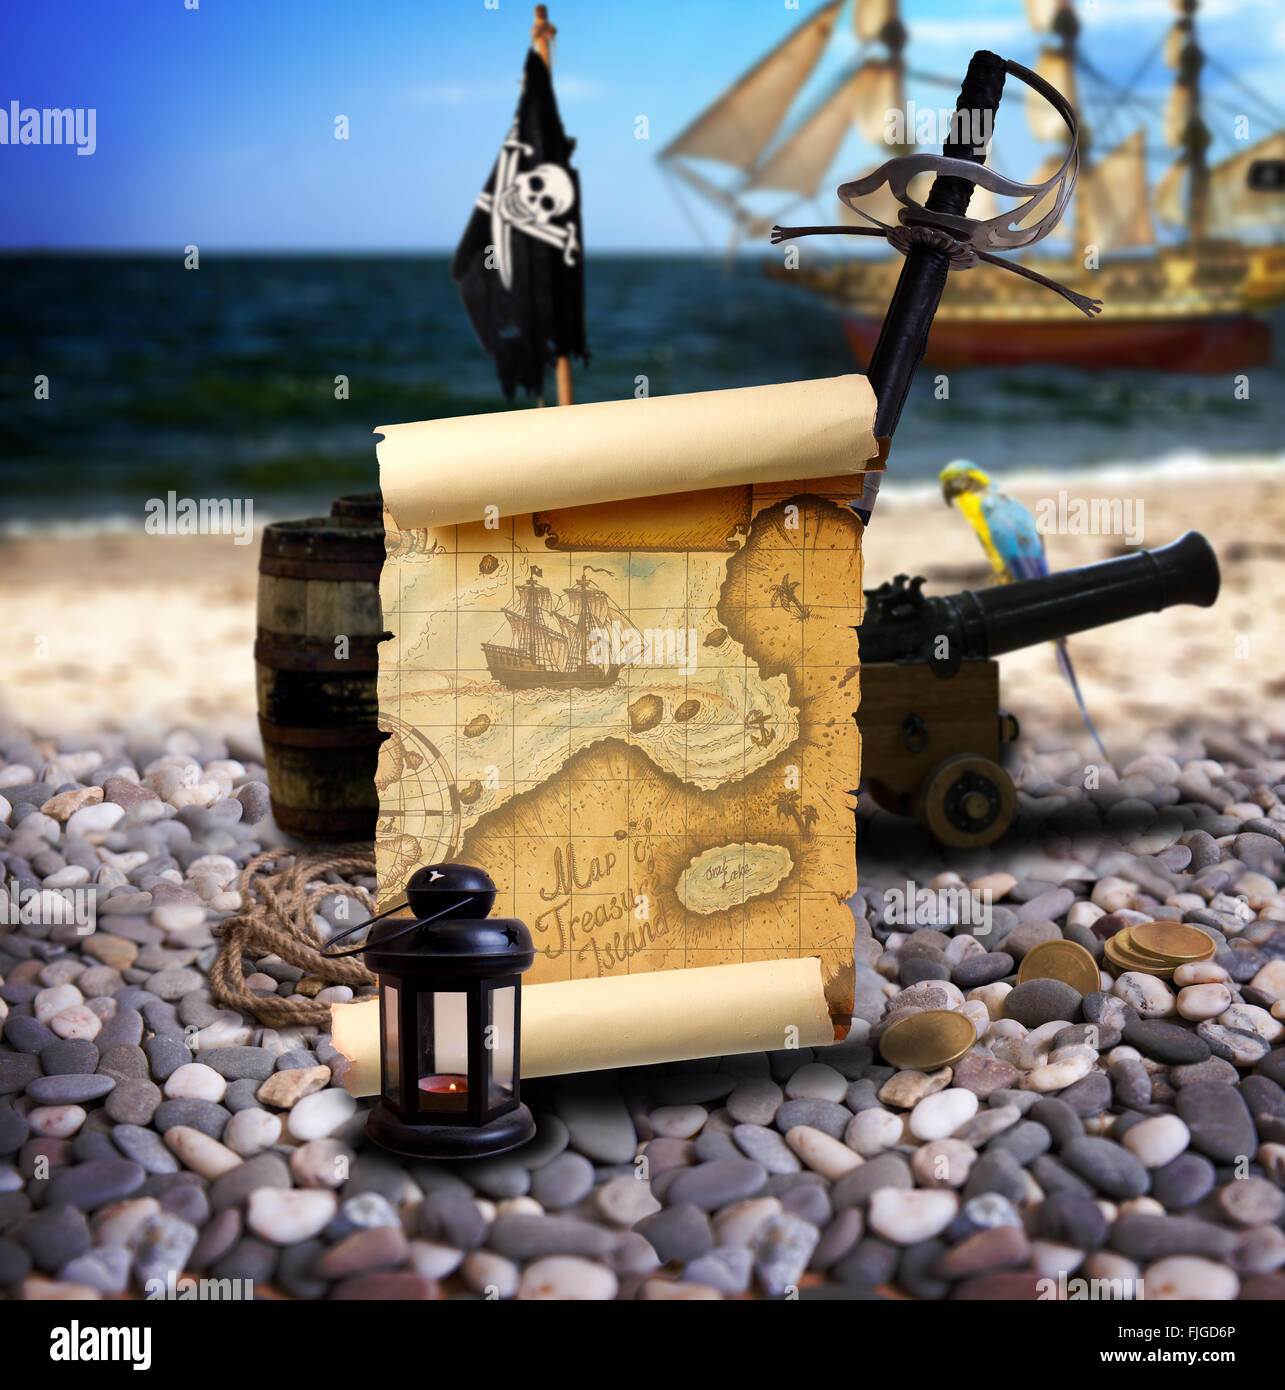 Piraten-Ambiente mit Karte, Kanonen, Schatz, Laterne und Papagei auf der Bank von einem leeren Pebble Beach. Im Hintergrund ist pirat Stockfoto